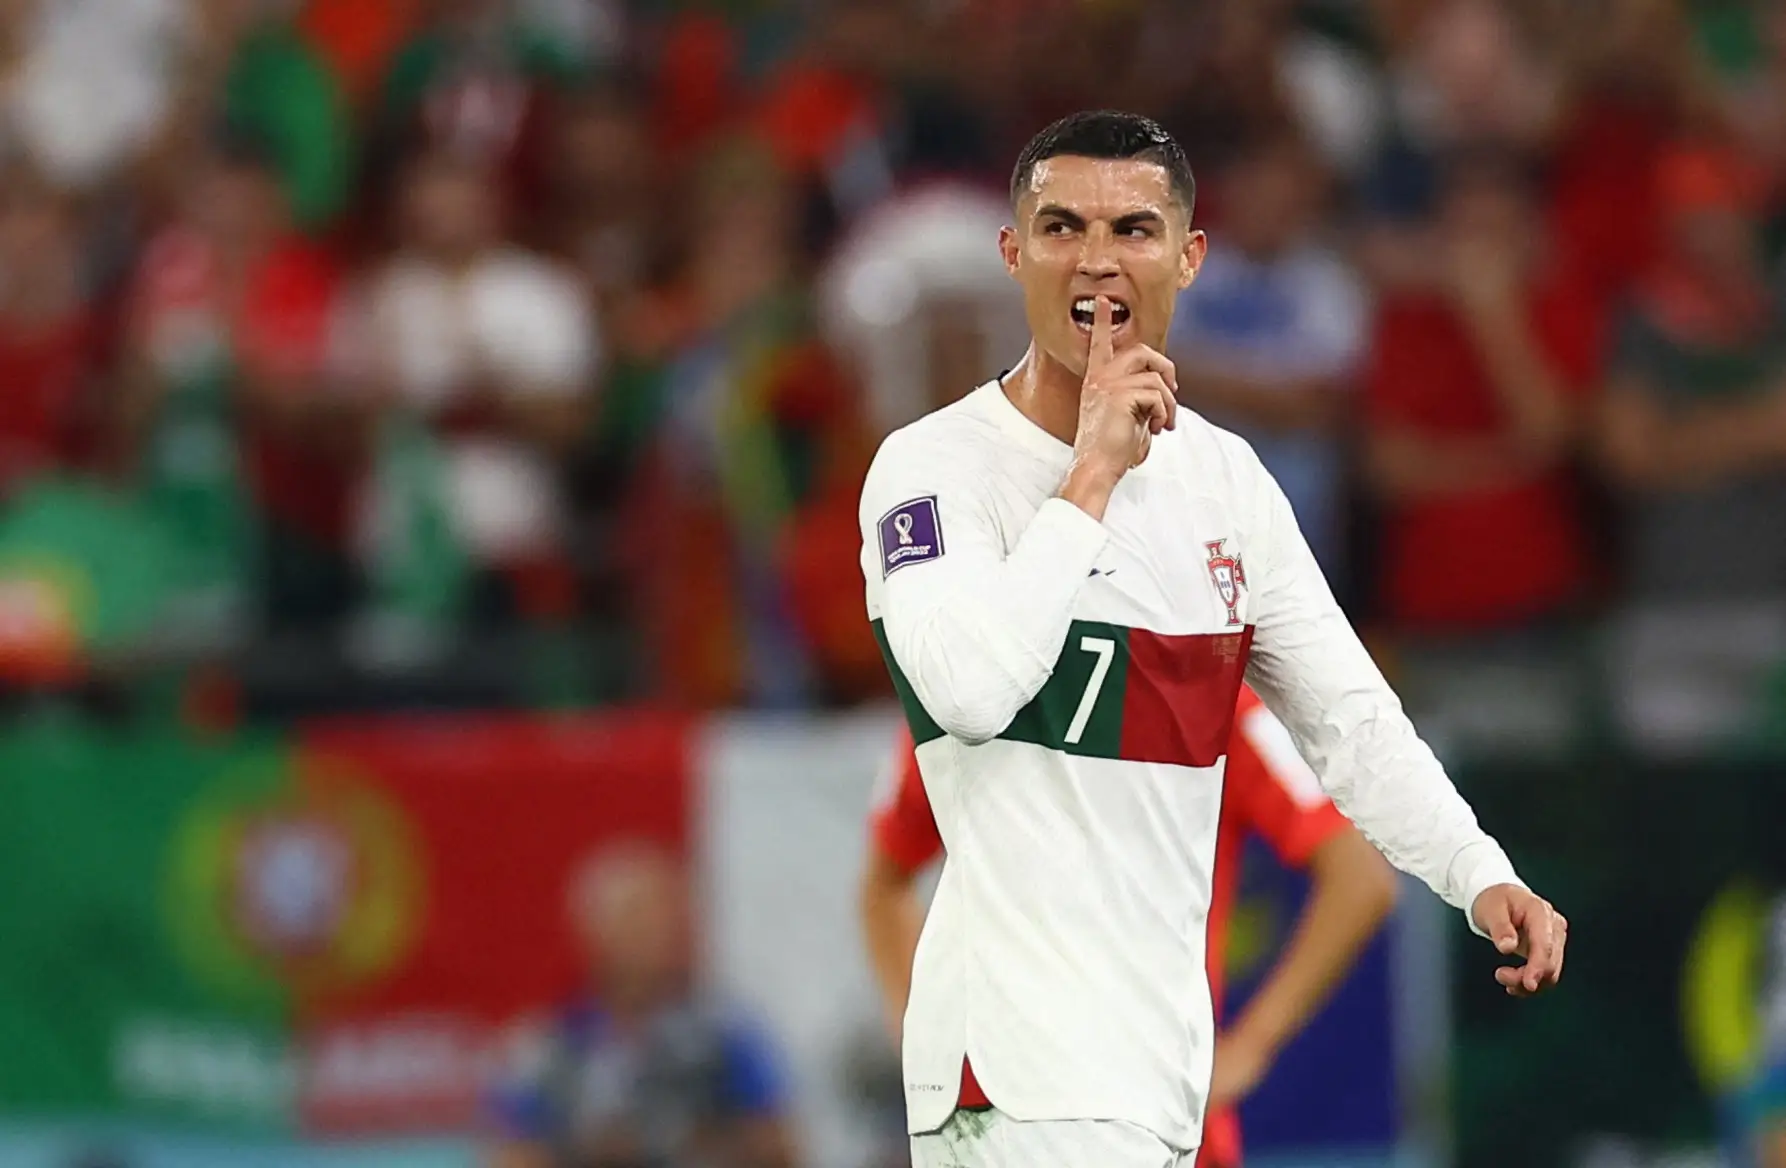 “Tens uma pressa para me tirar”: Cristiano Ronaldo esclarece nova polémica